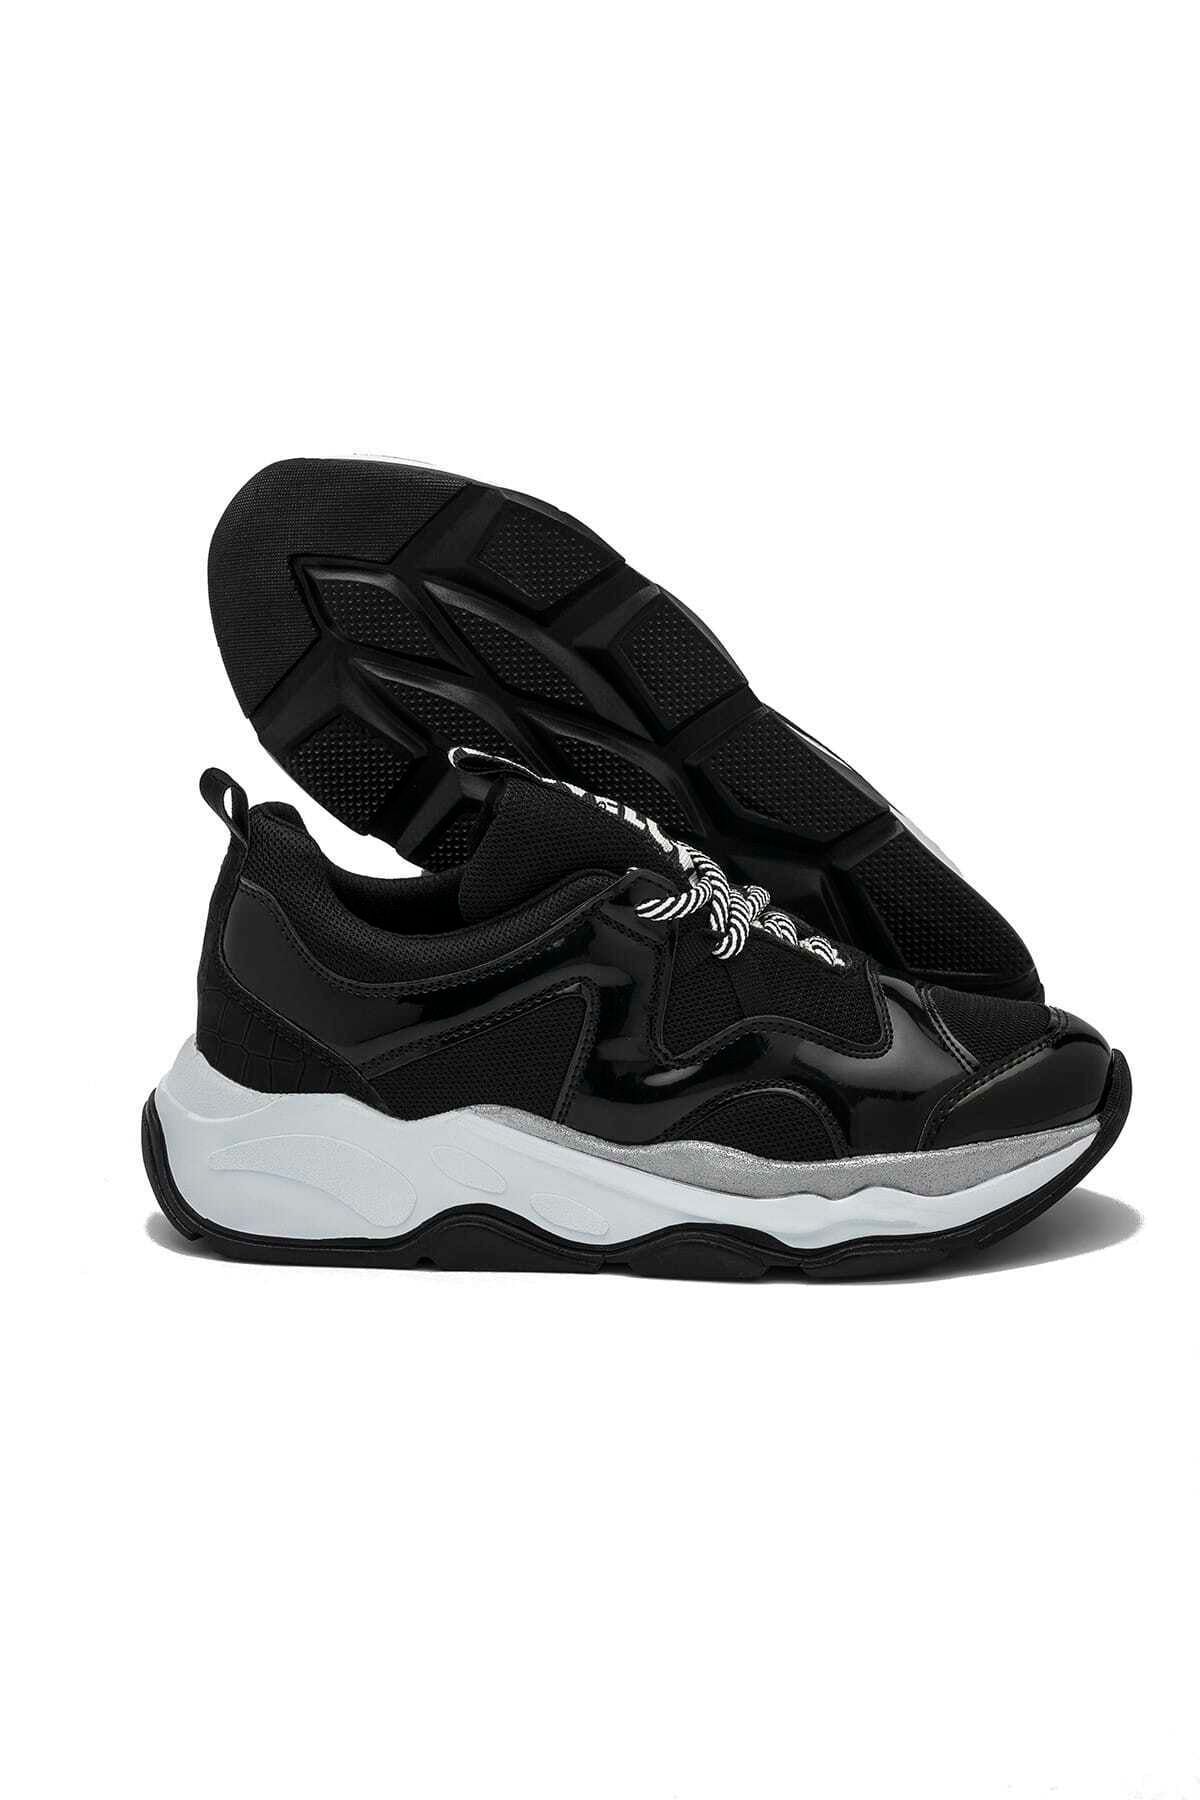 Tiffany Tomato 29150498 Siyah Kadın Sneaker Ayakkabı